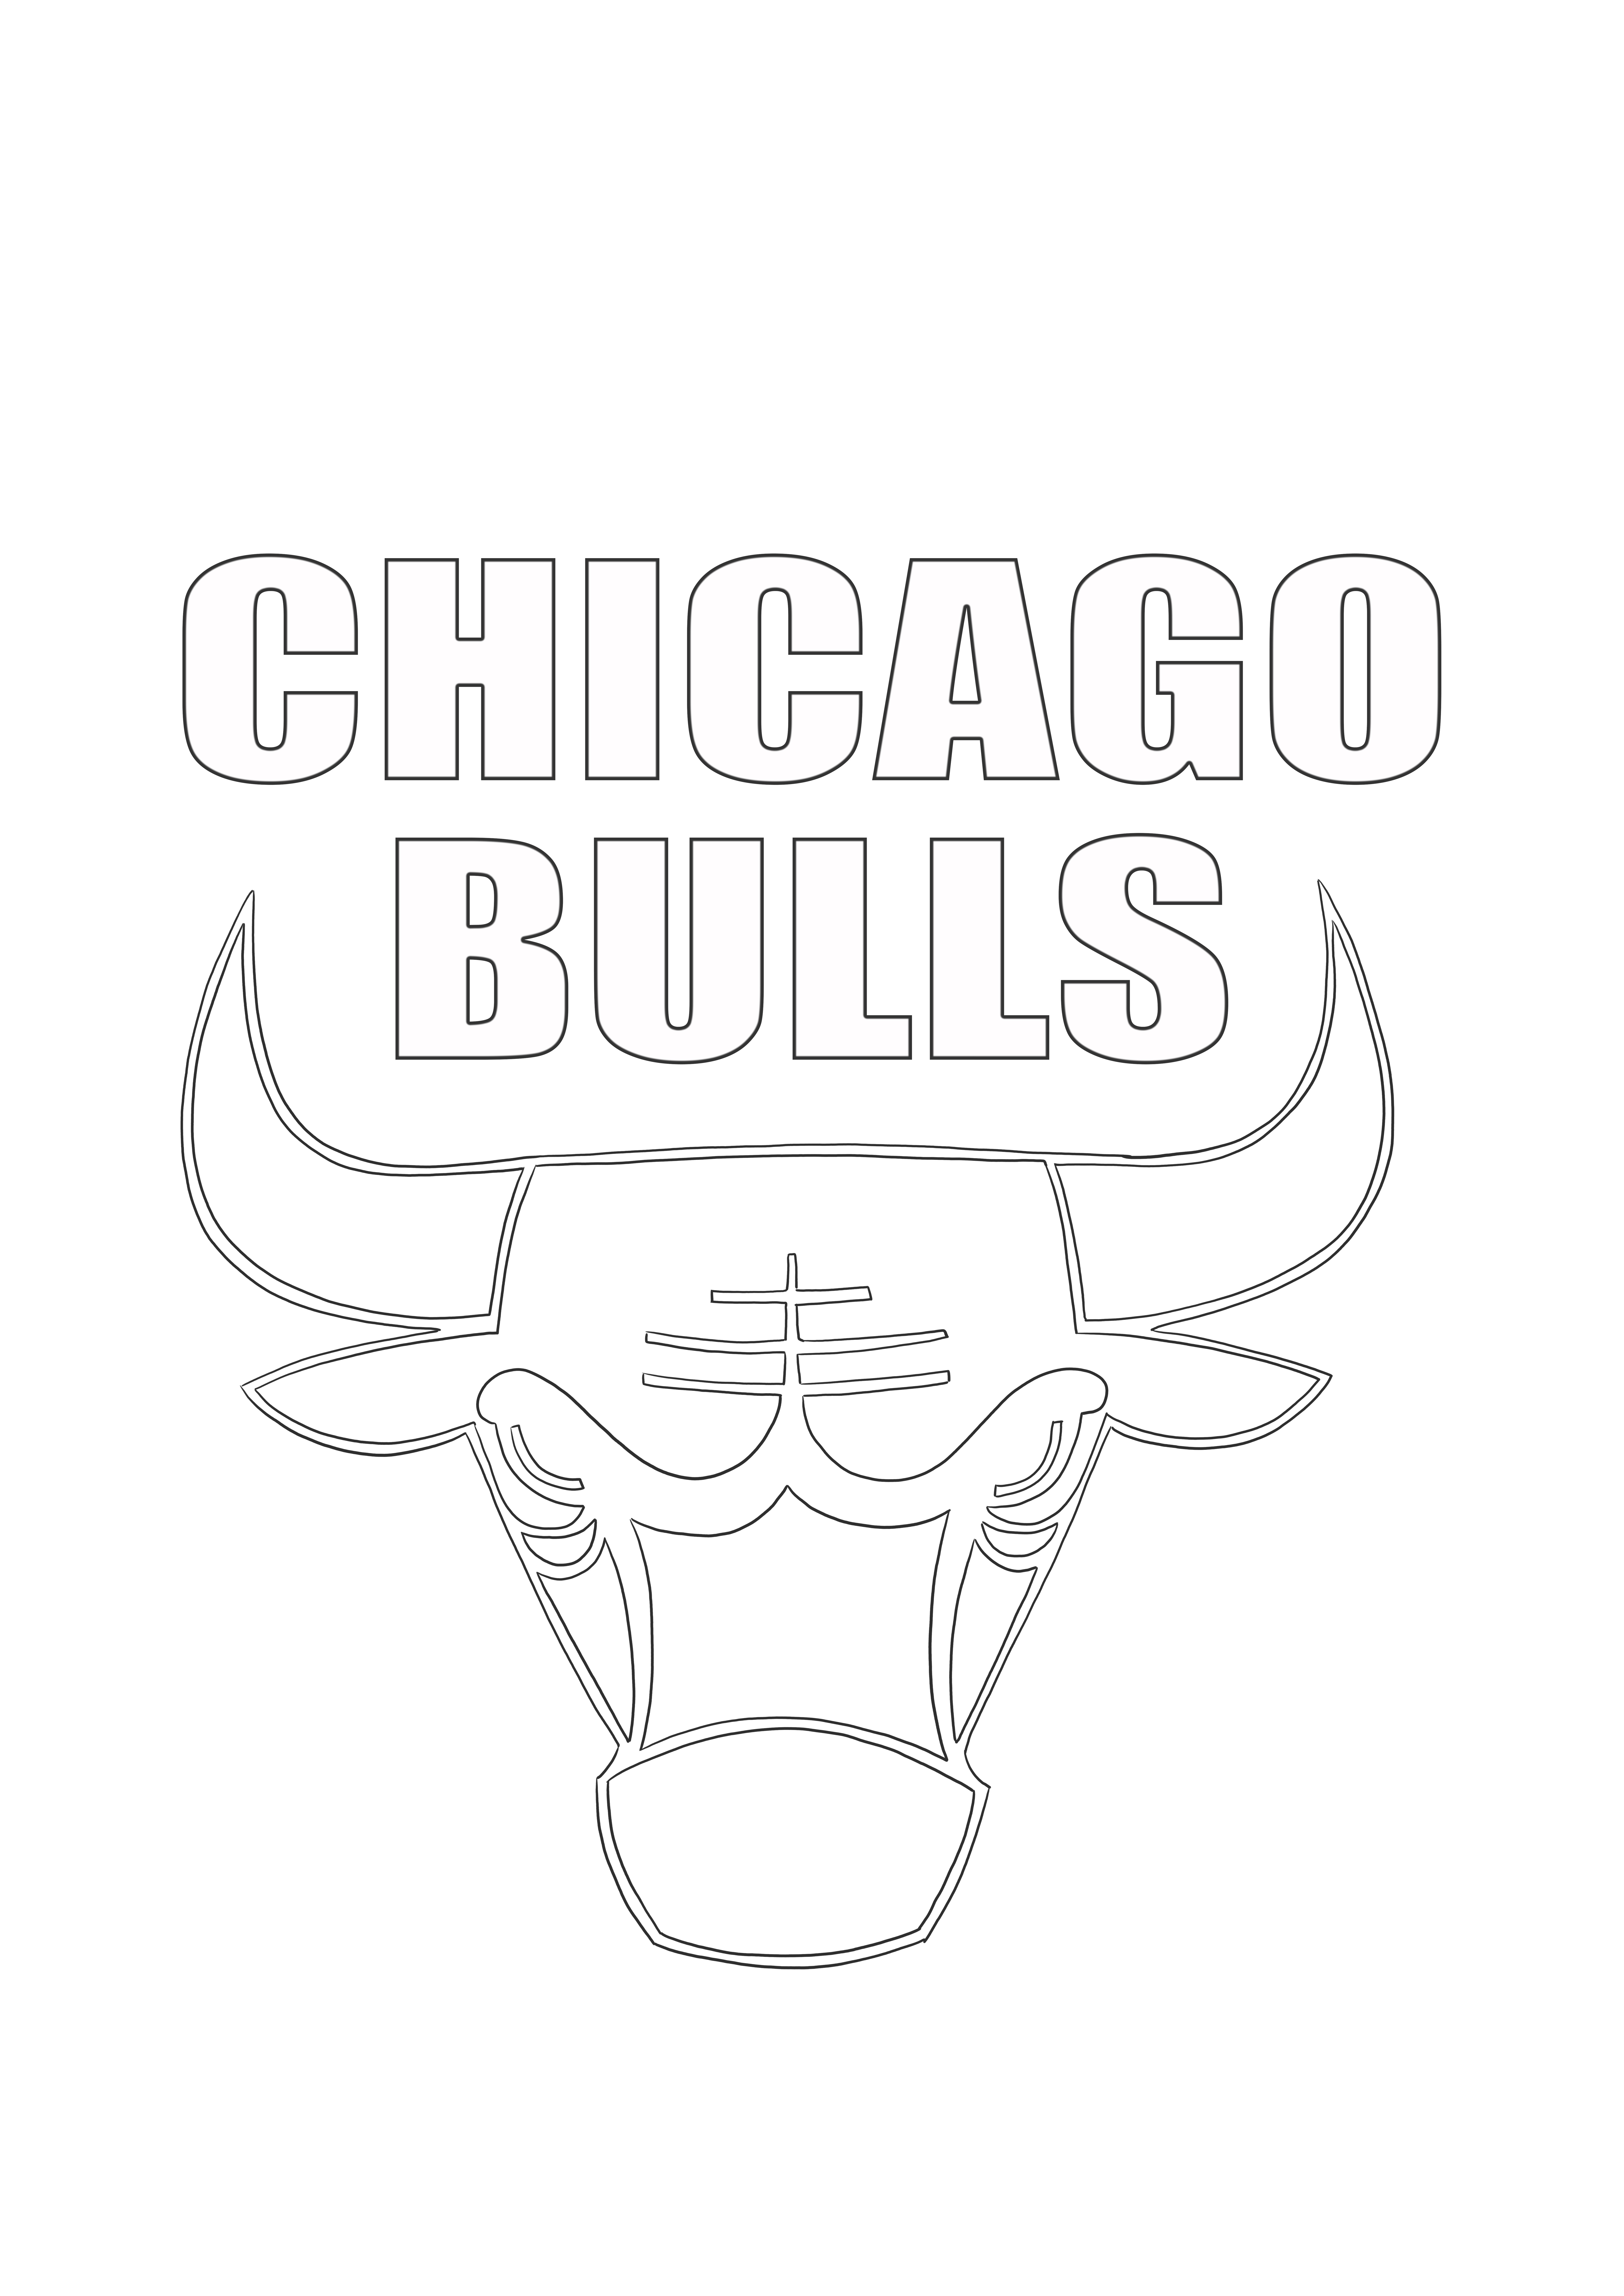 Chicago Bulls-logo kleurplaat gratis om af te drukken en in te kleuren kleurplaat